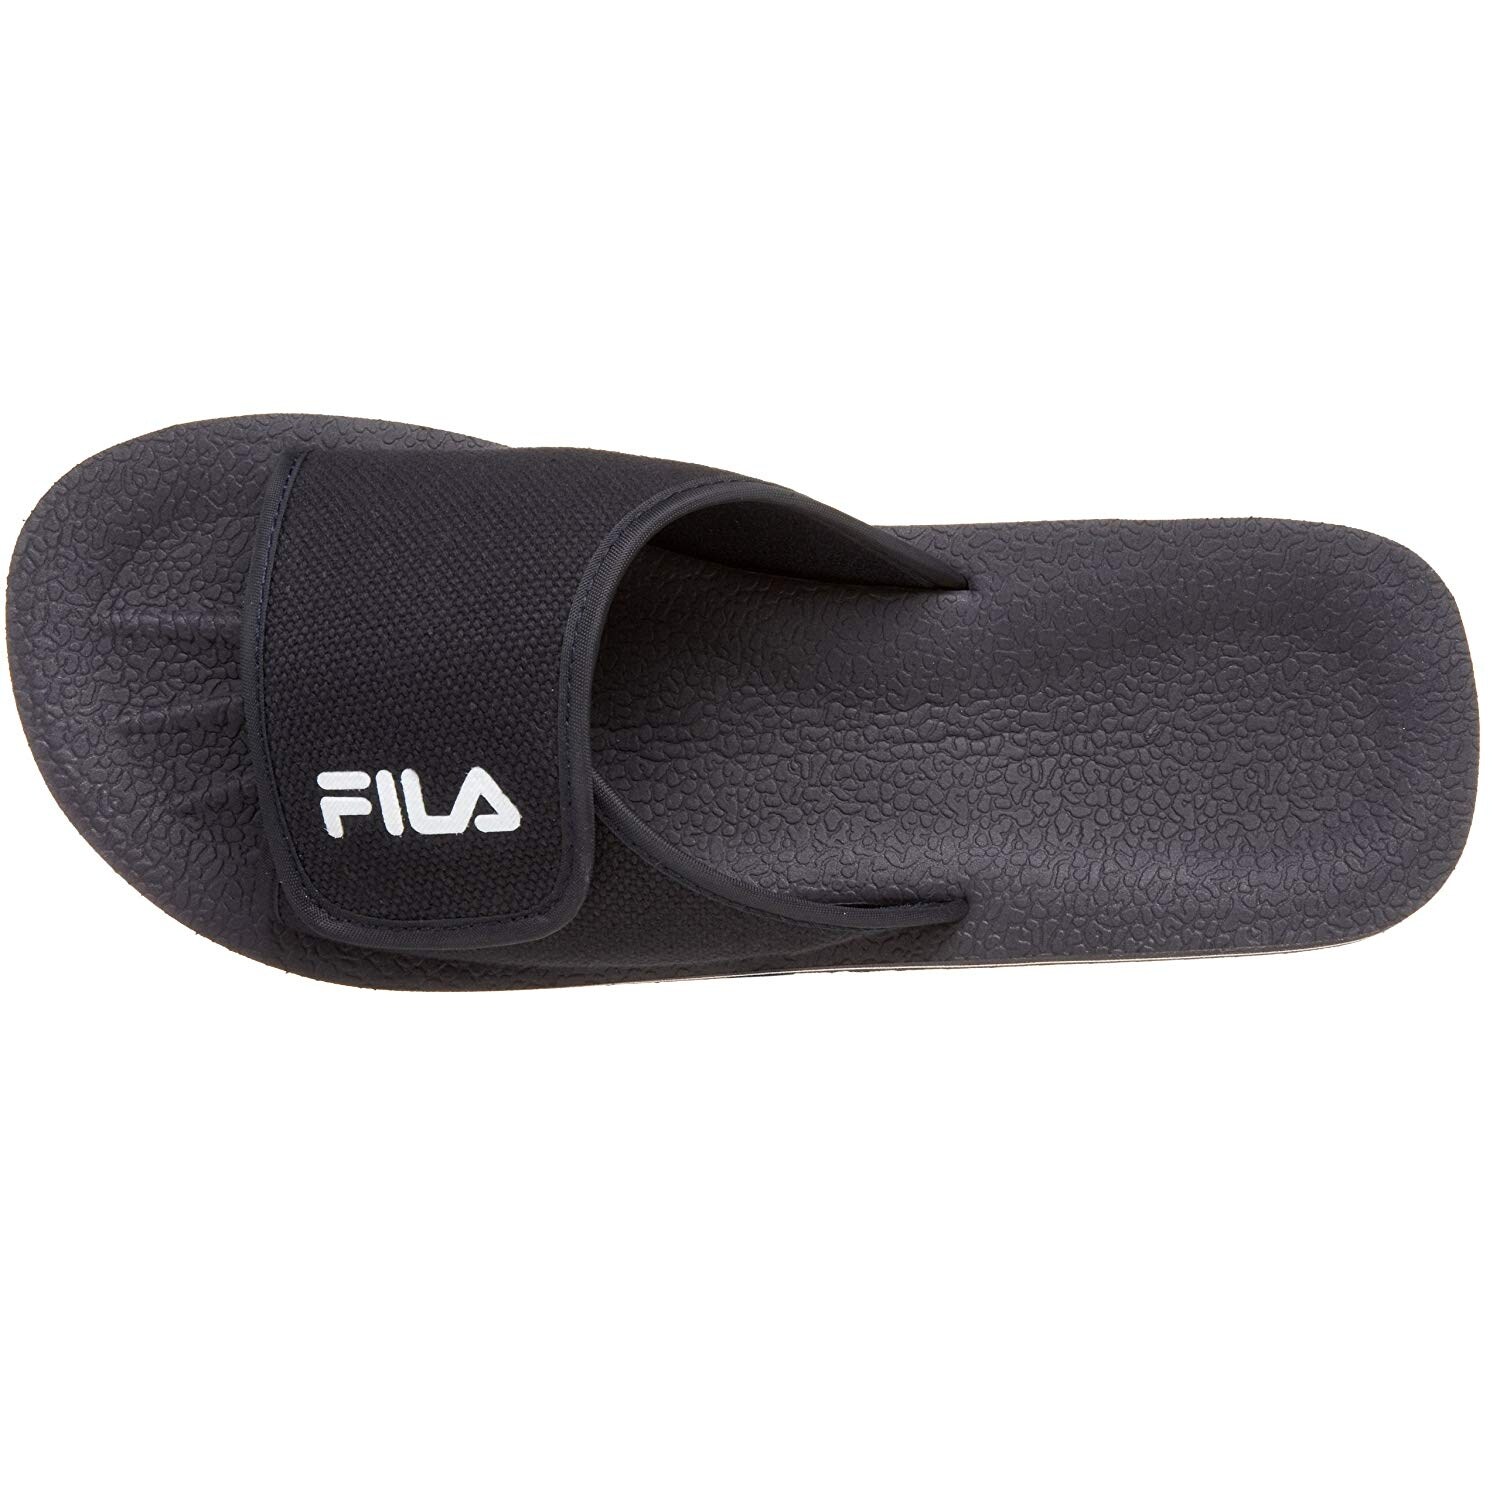 fila open toe shoes